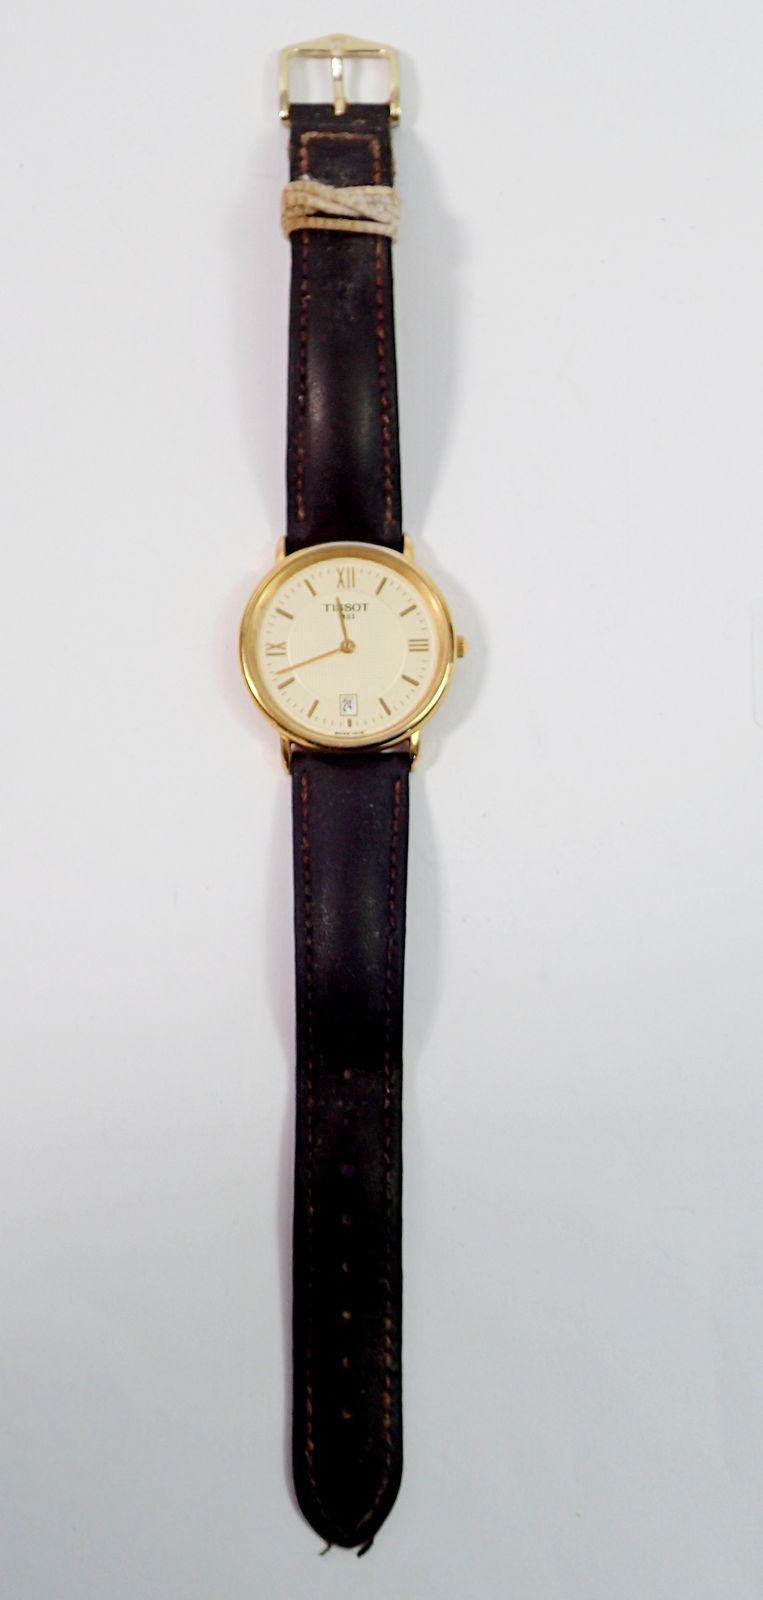 A Tissot '1853' gold plated gentlemen's wrist watch